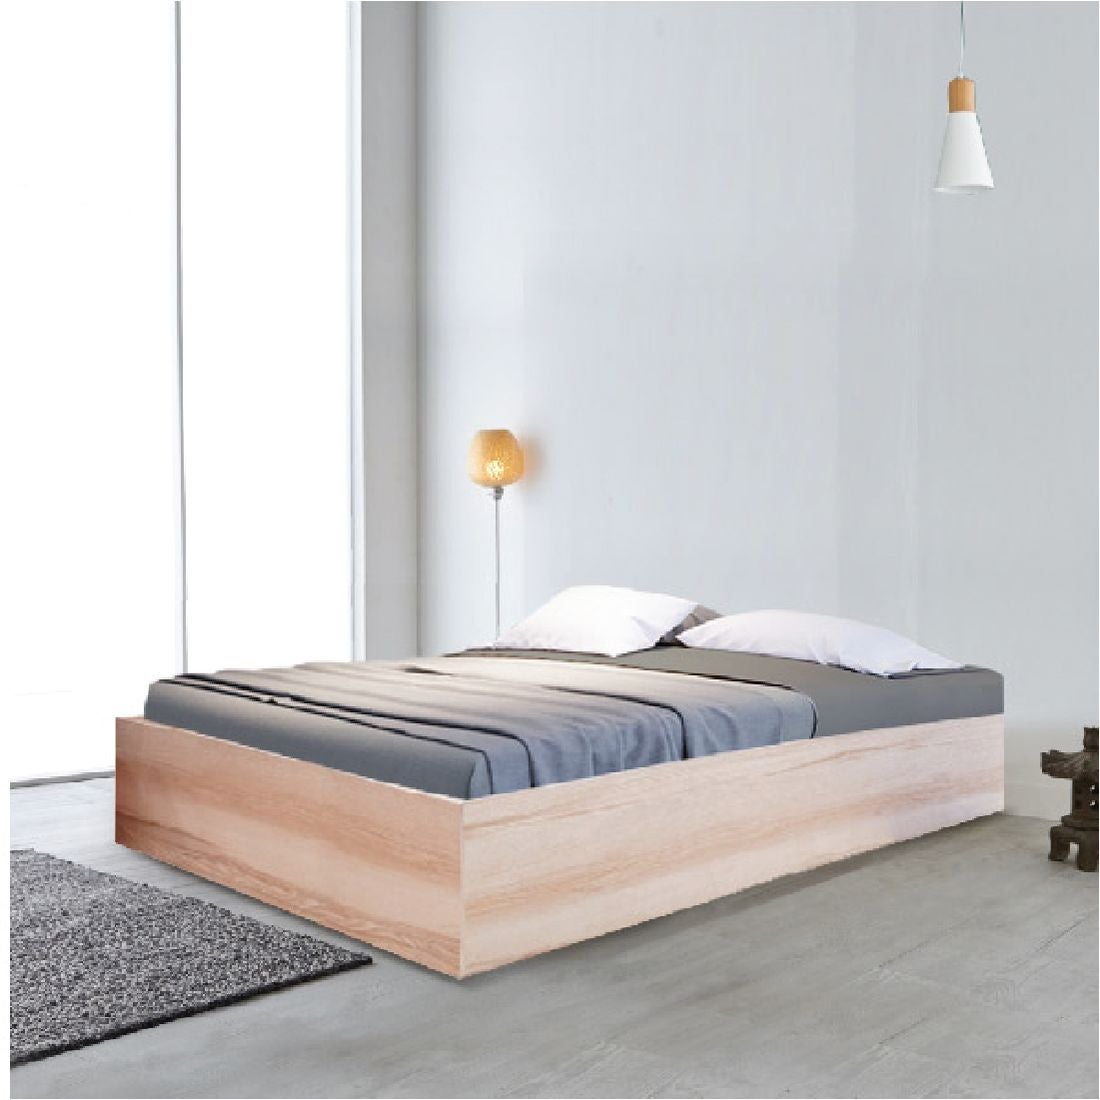 ชุดห้องนอน เตียง รุ่น KC-PLAY สีสีโอ๊คอ่อน-SB Design Square